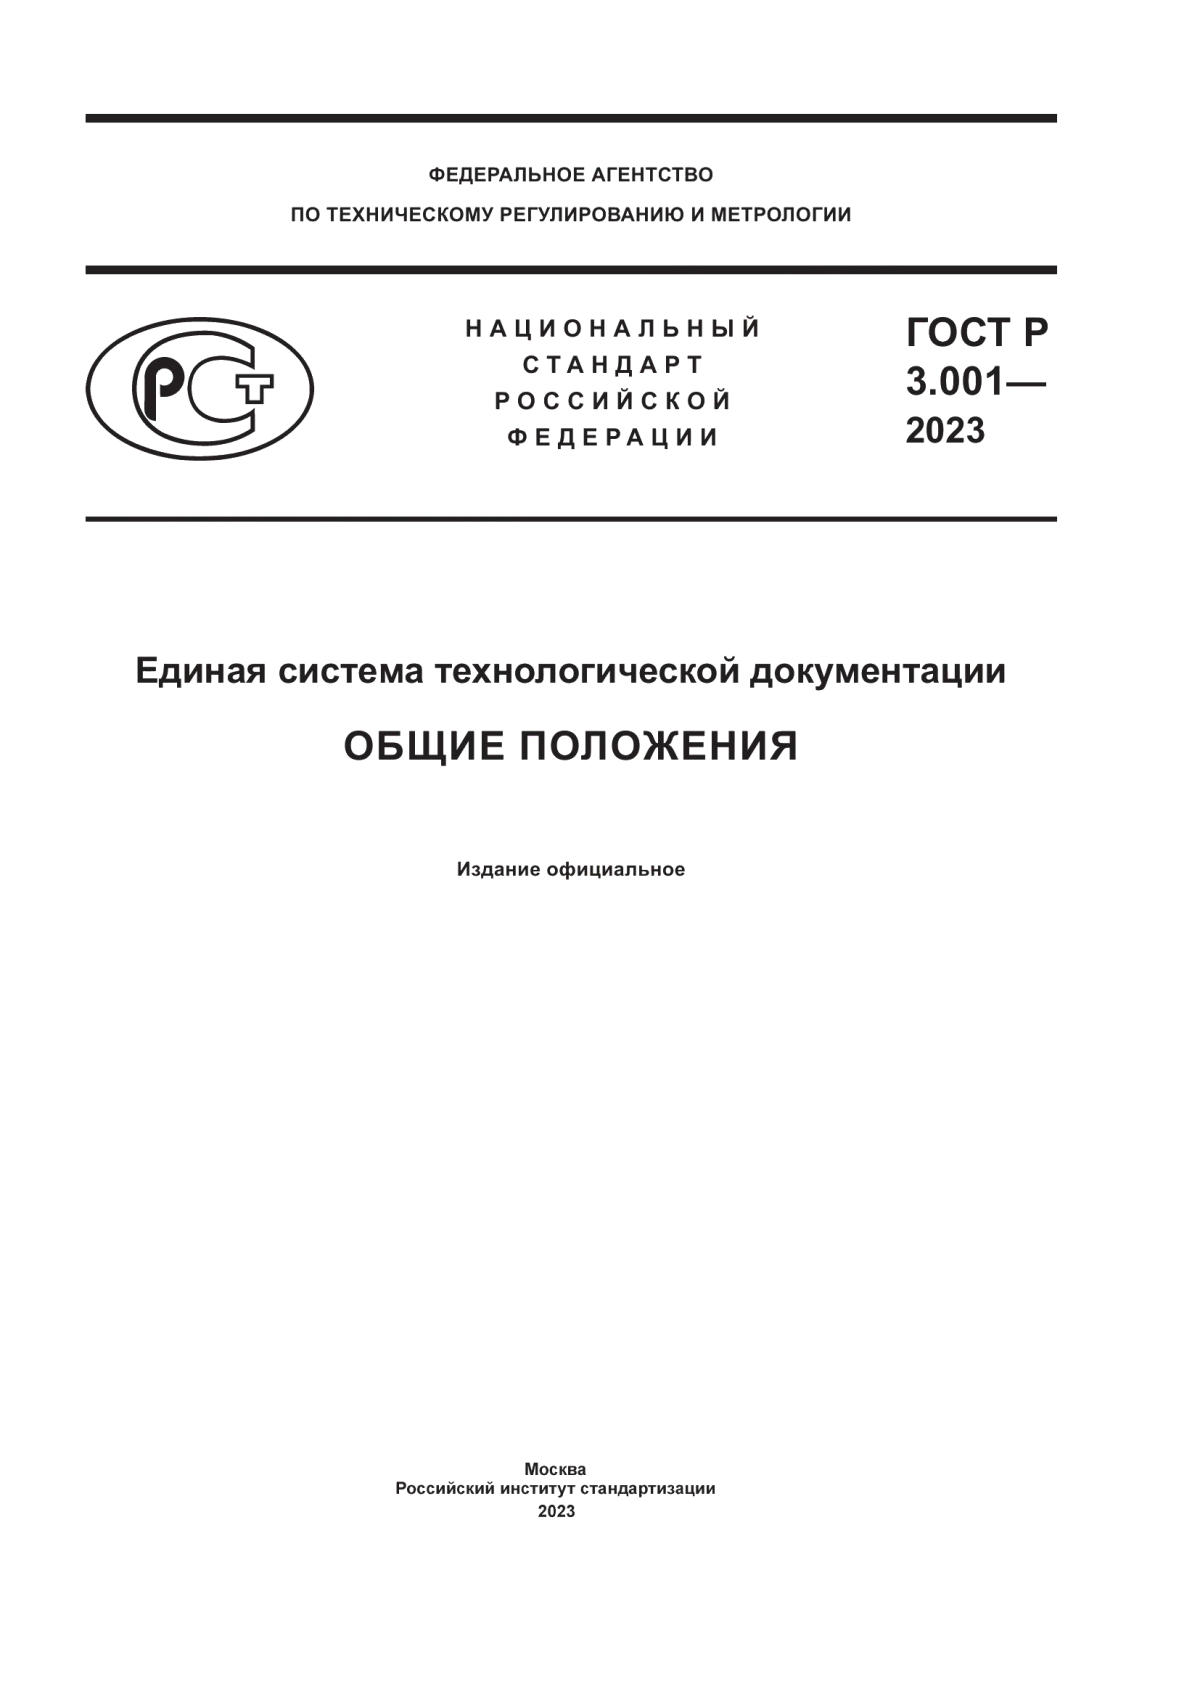 ГОСТ Р 3.001-2023 Единая система технологической документации. Общие положения